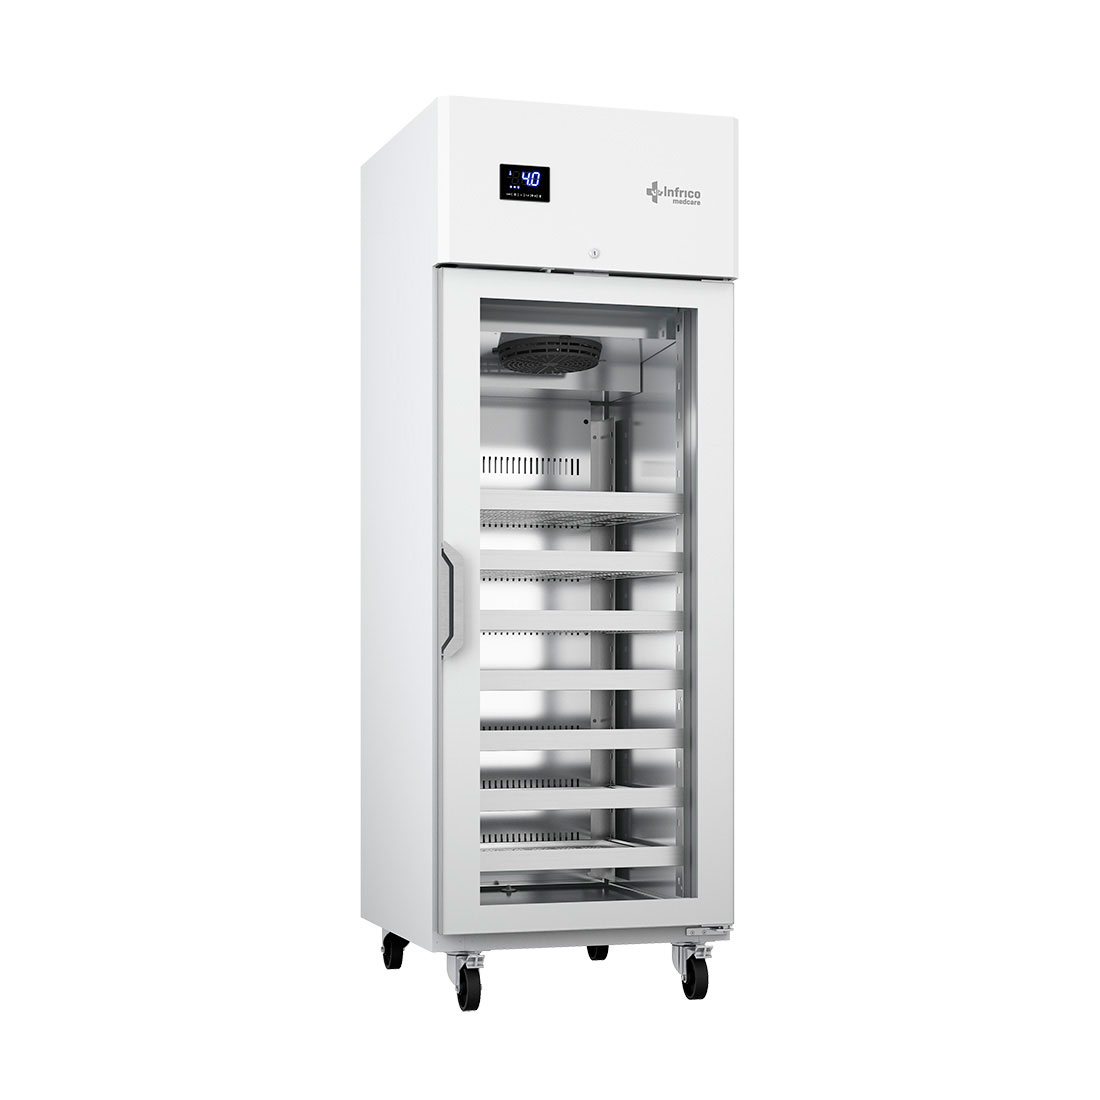 Armario de refrigeración vertical de 650 litros de capacidad nominal. INFRICO MEDCARE.